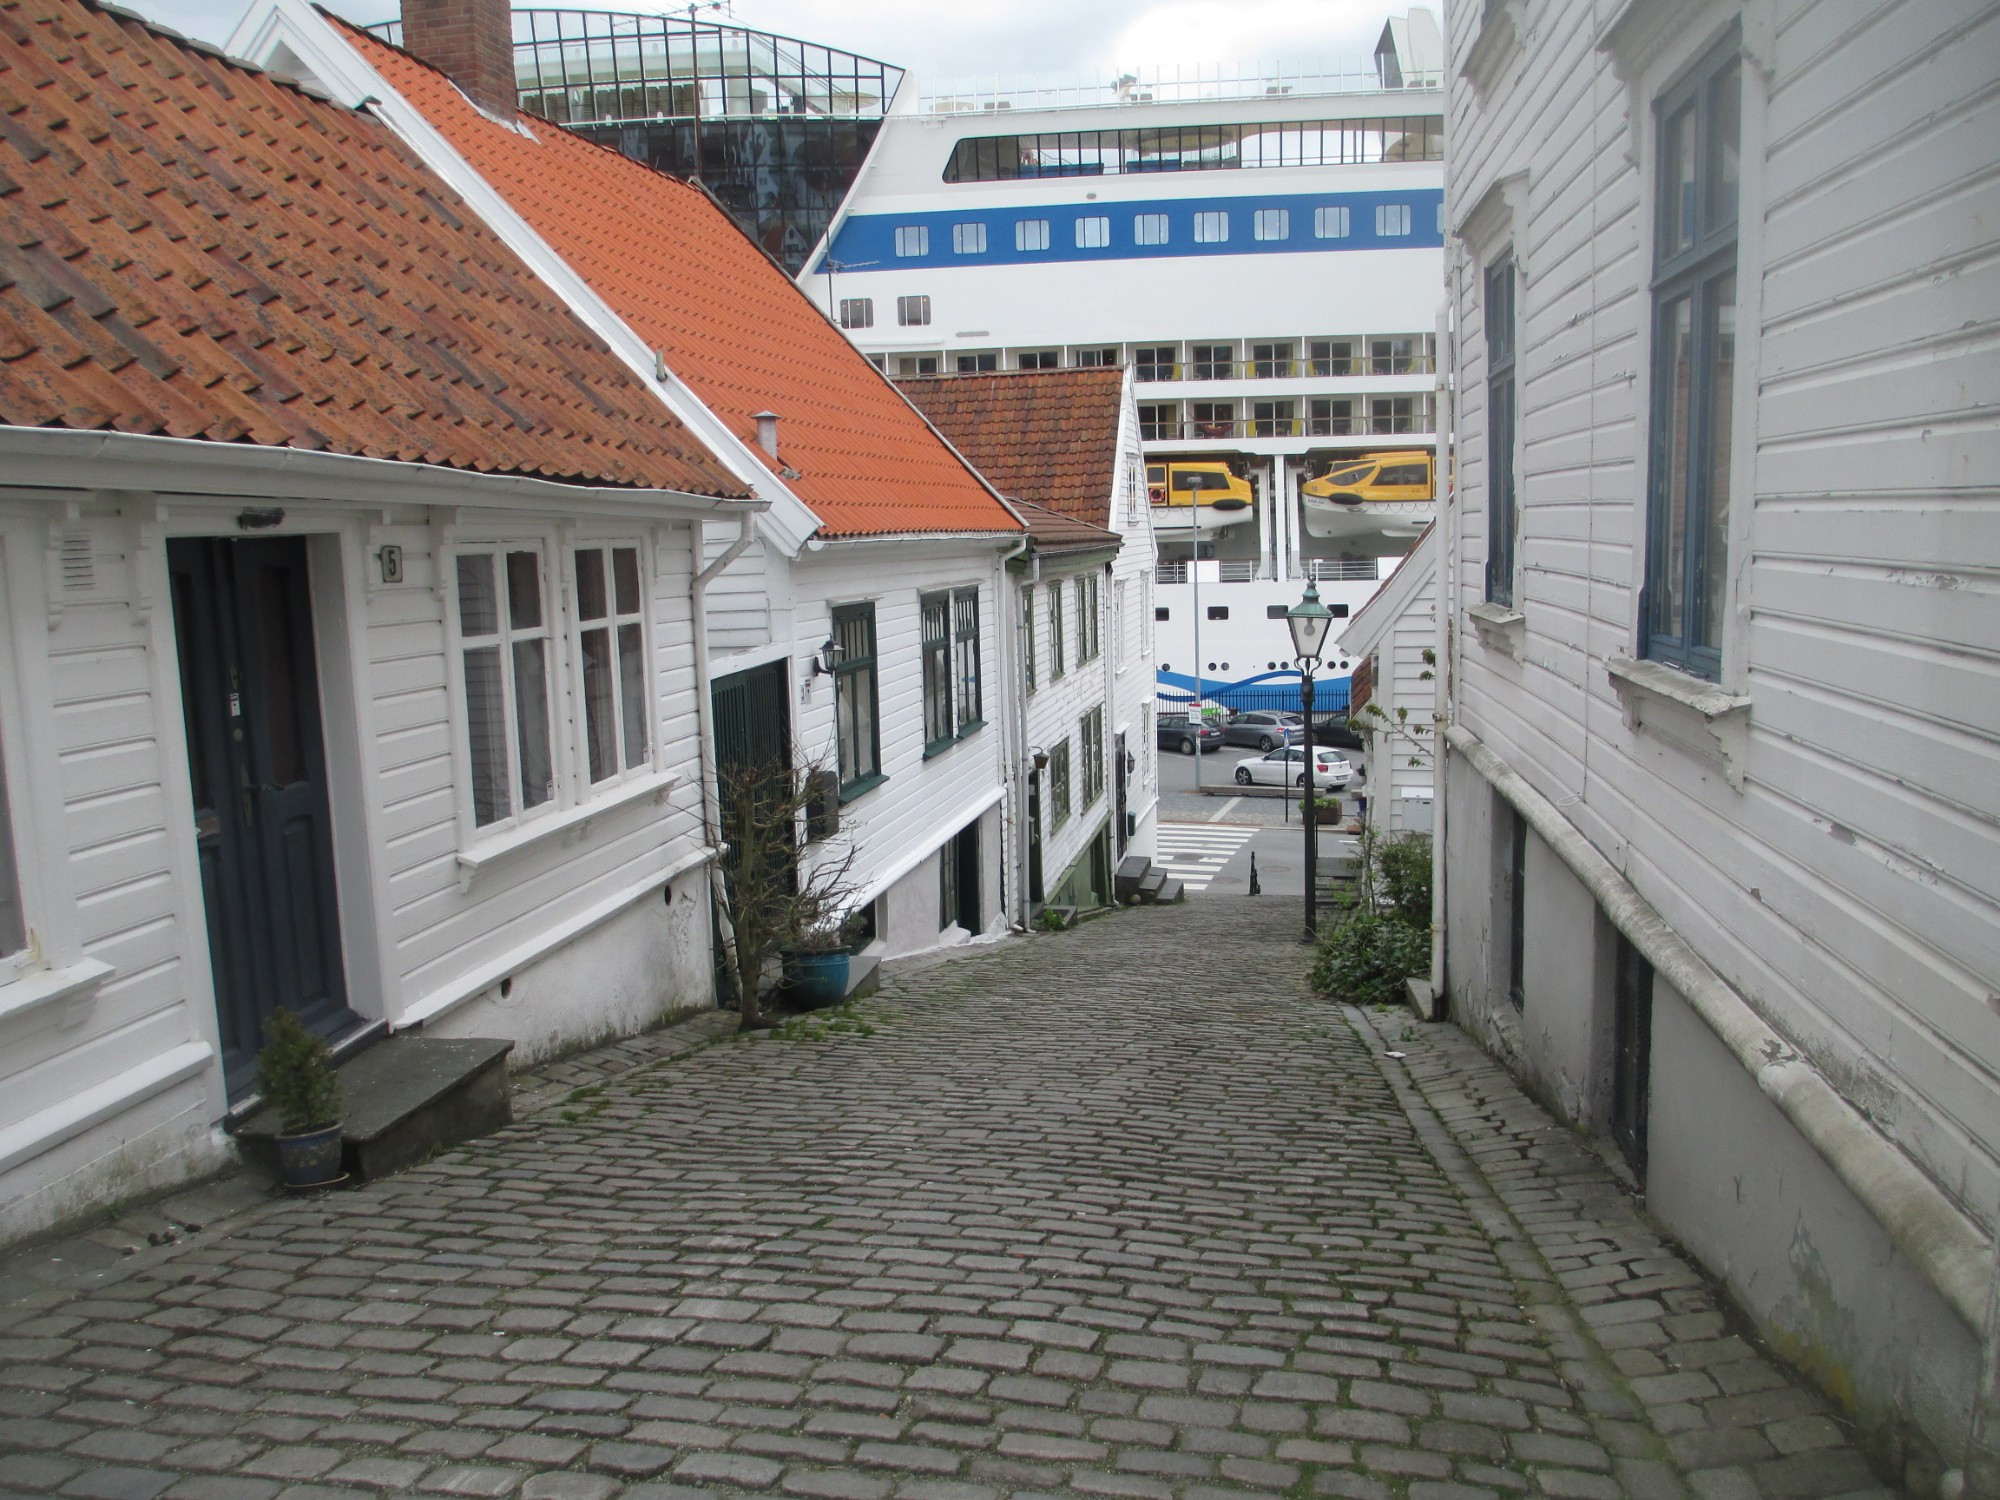 Ставангер. Gamle Stavanger. (05.05.2015)